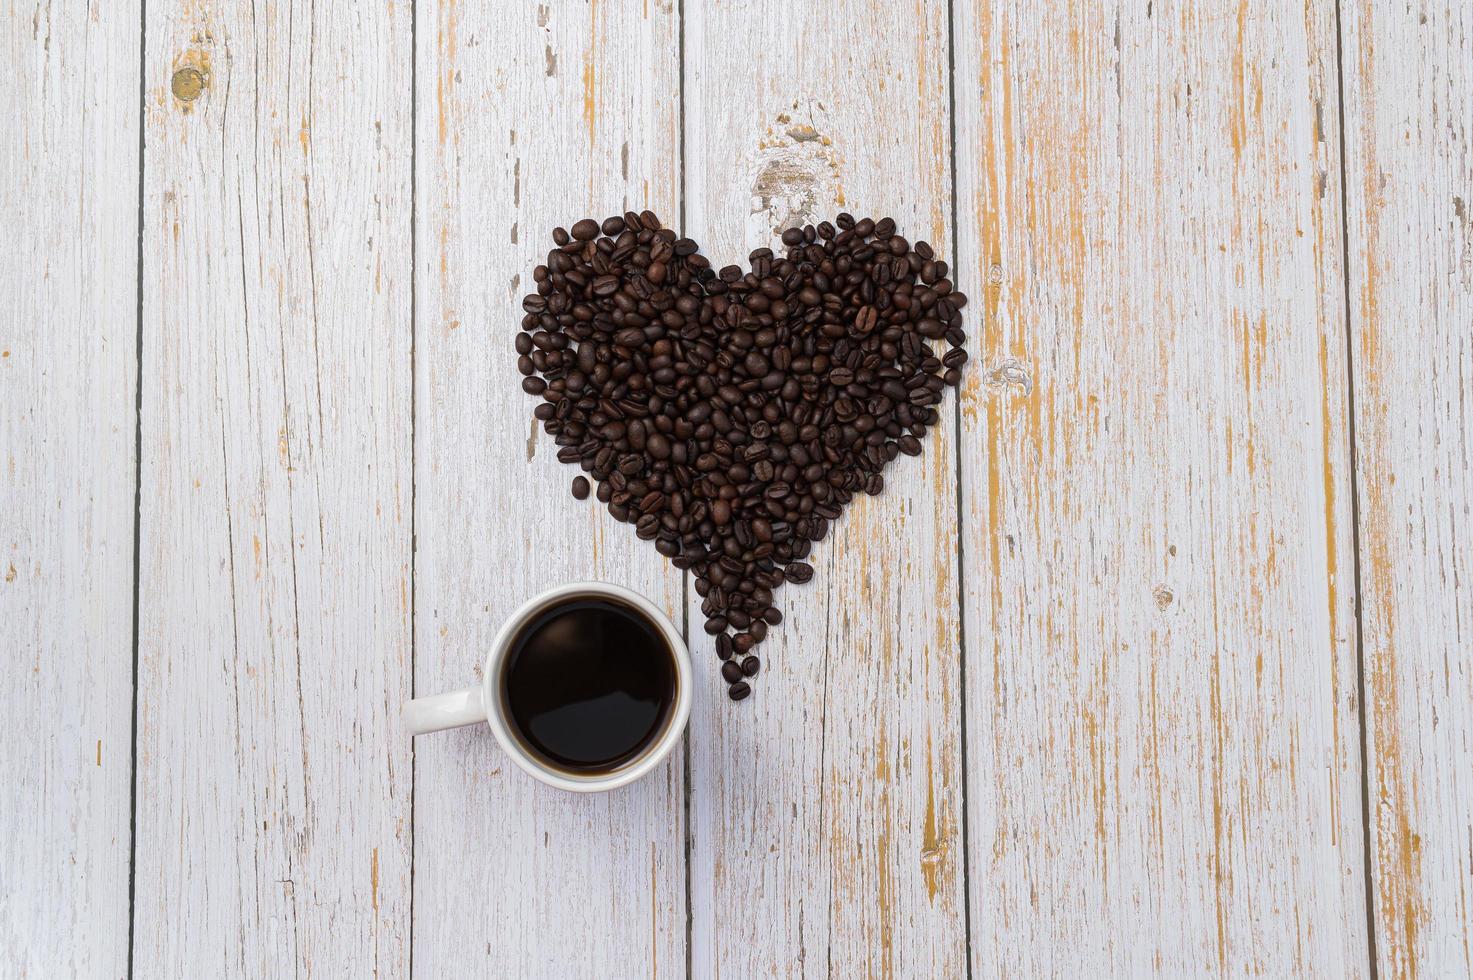 Kaffeebohnen in Herzform angeordnet, Liebe zum Kaffeetrinken Konzept foto